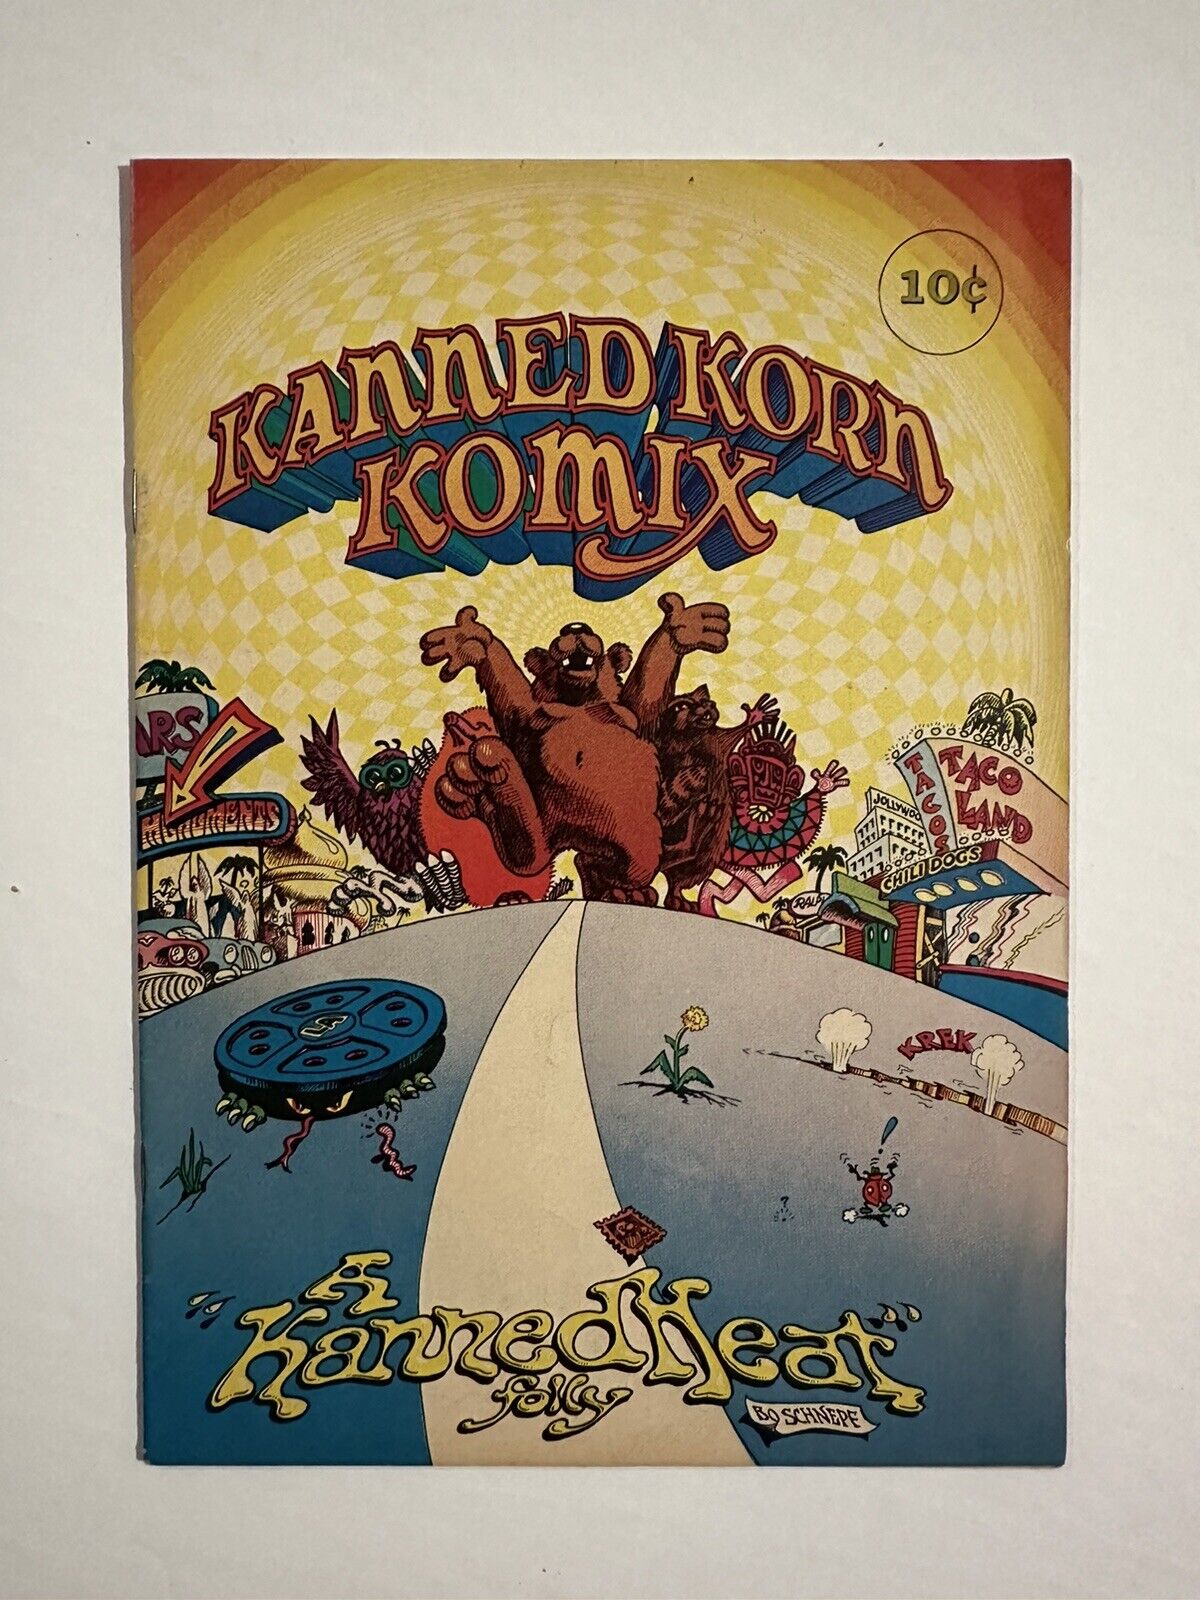 Kanned Korn Komix #0 (1969) Original Canned Heat Fan Club Bo Schnepf Comic